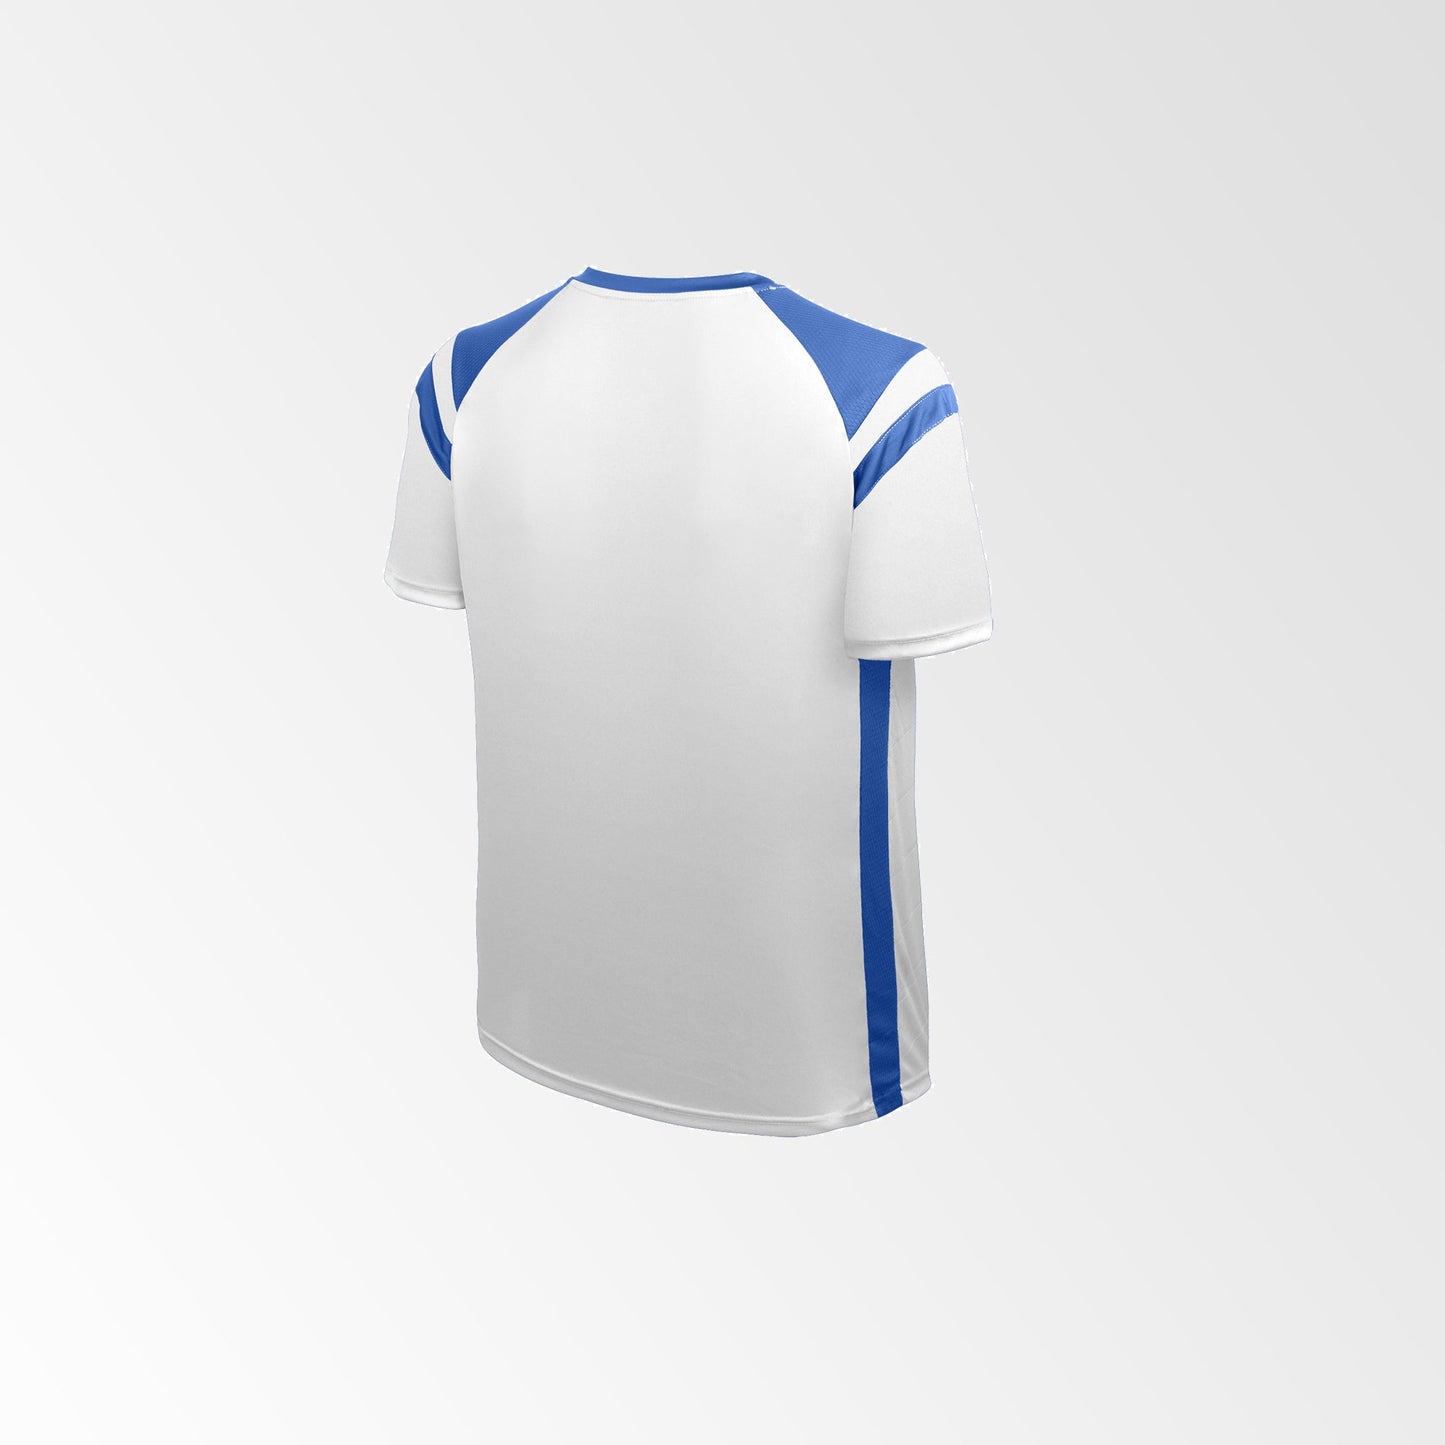 Camiseta de Fútbol y Short Modelo High Five Blanco Azul (Niños - Juveniles)